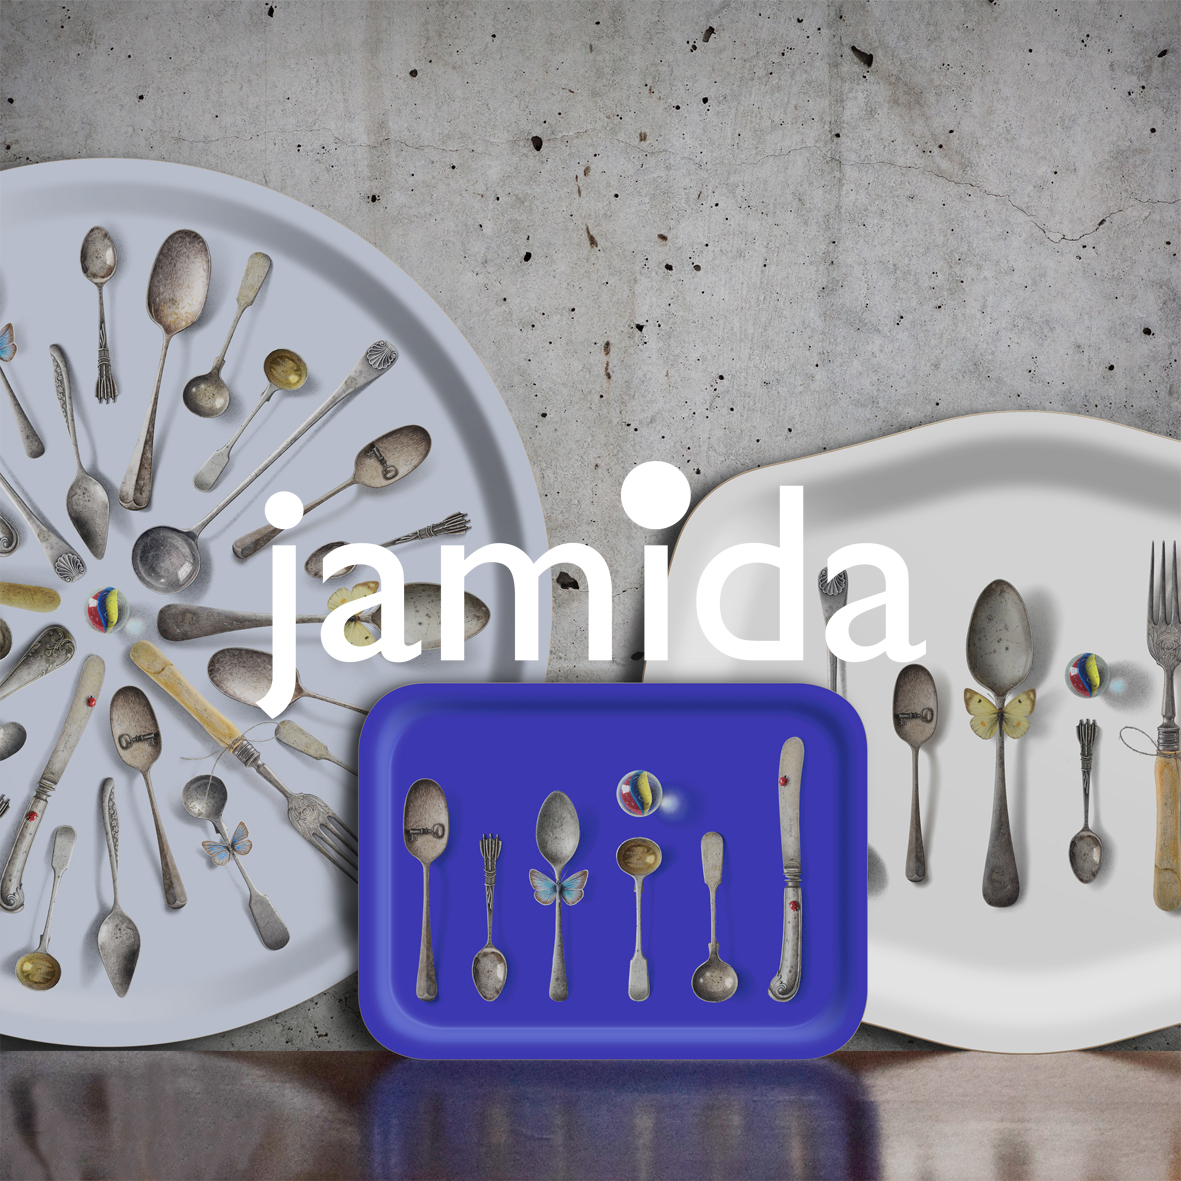 Jamida